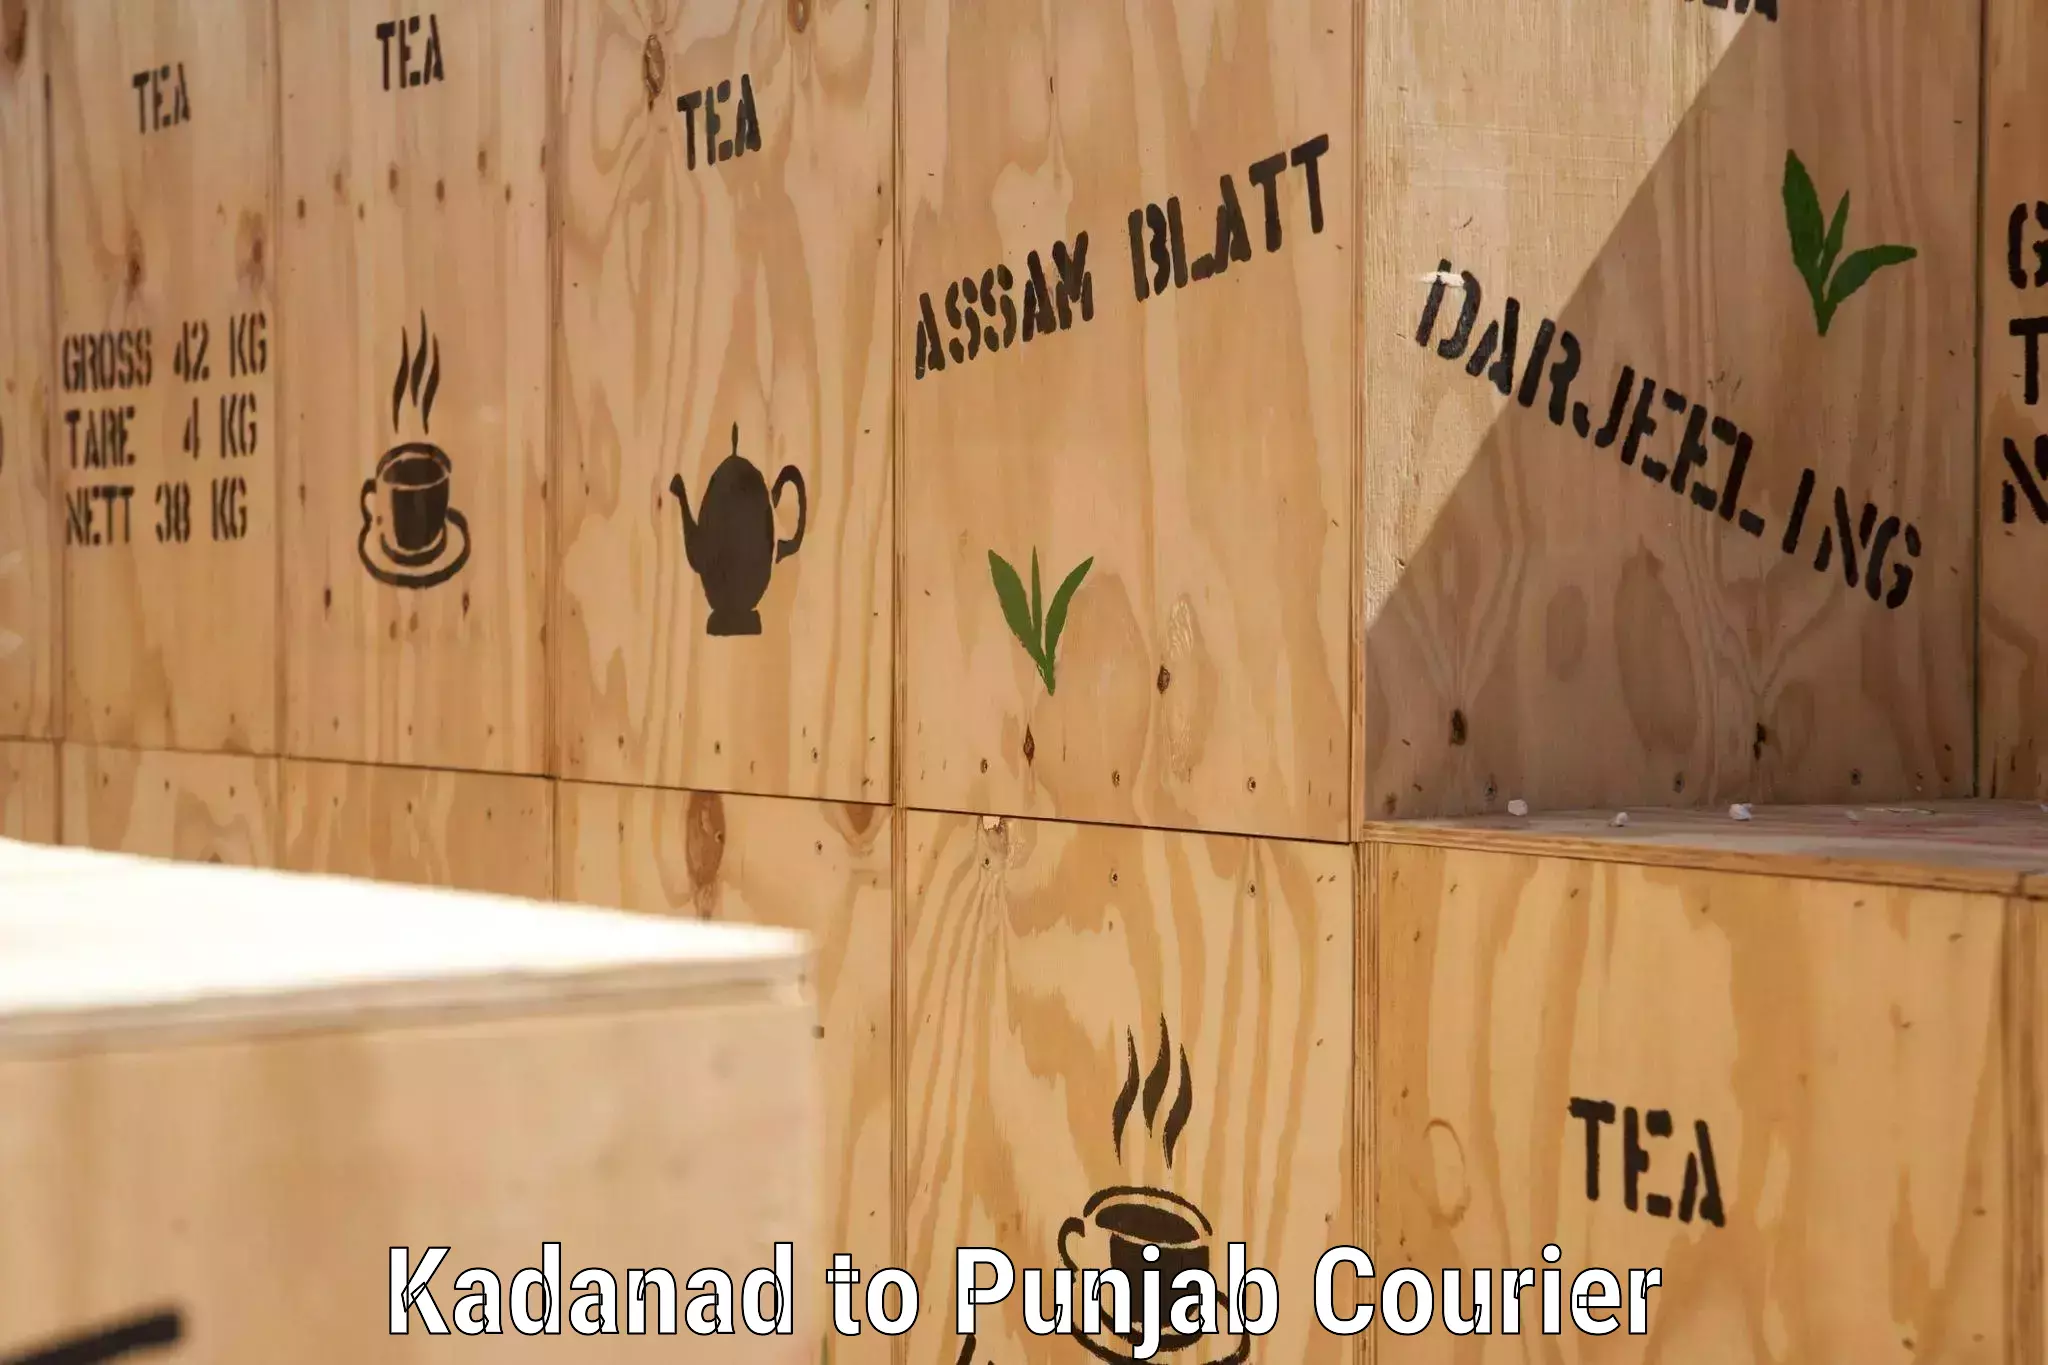 Reliable courier service Kadanad to Rampura Phul